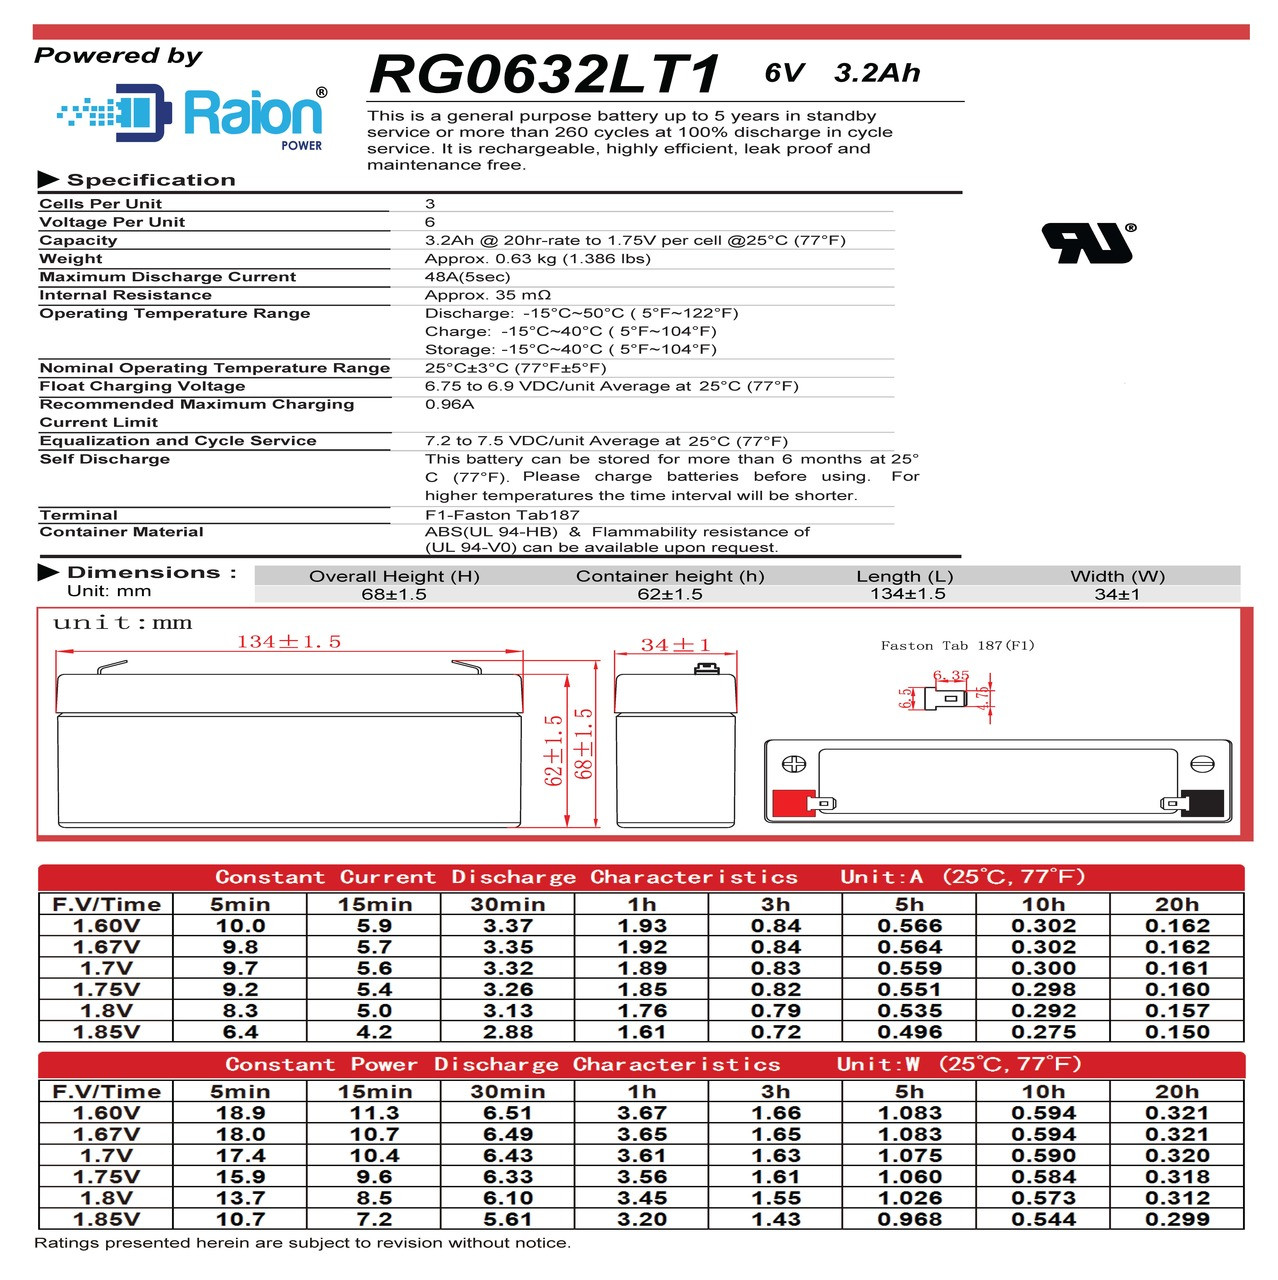 Raion Power RG0632LT1 6V 3.2Ah Battery Data Sheet for Health o meter 431KL Scale